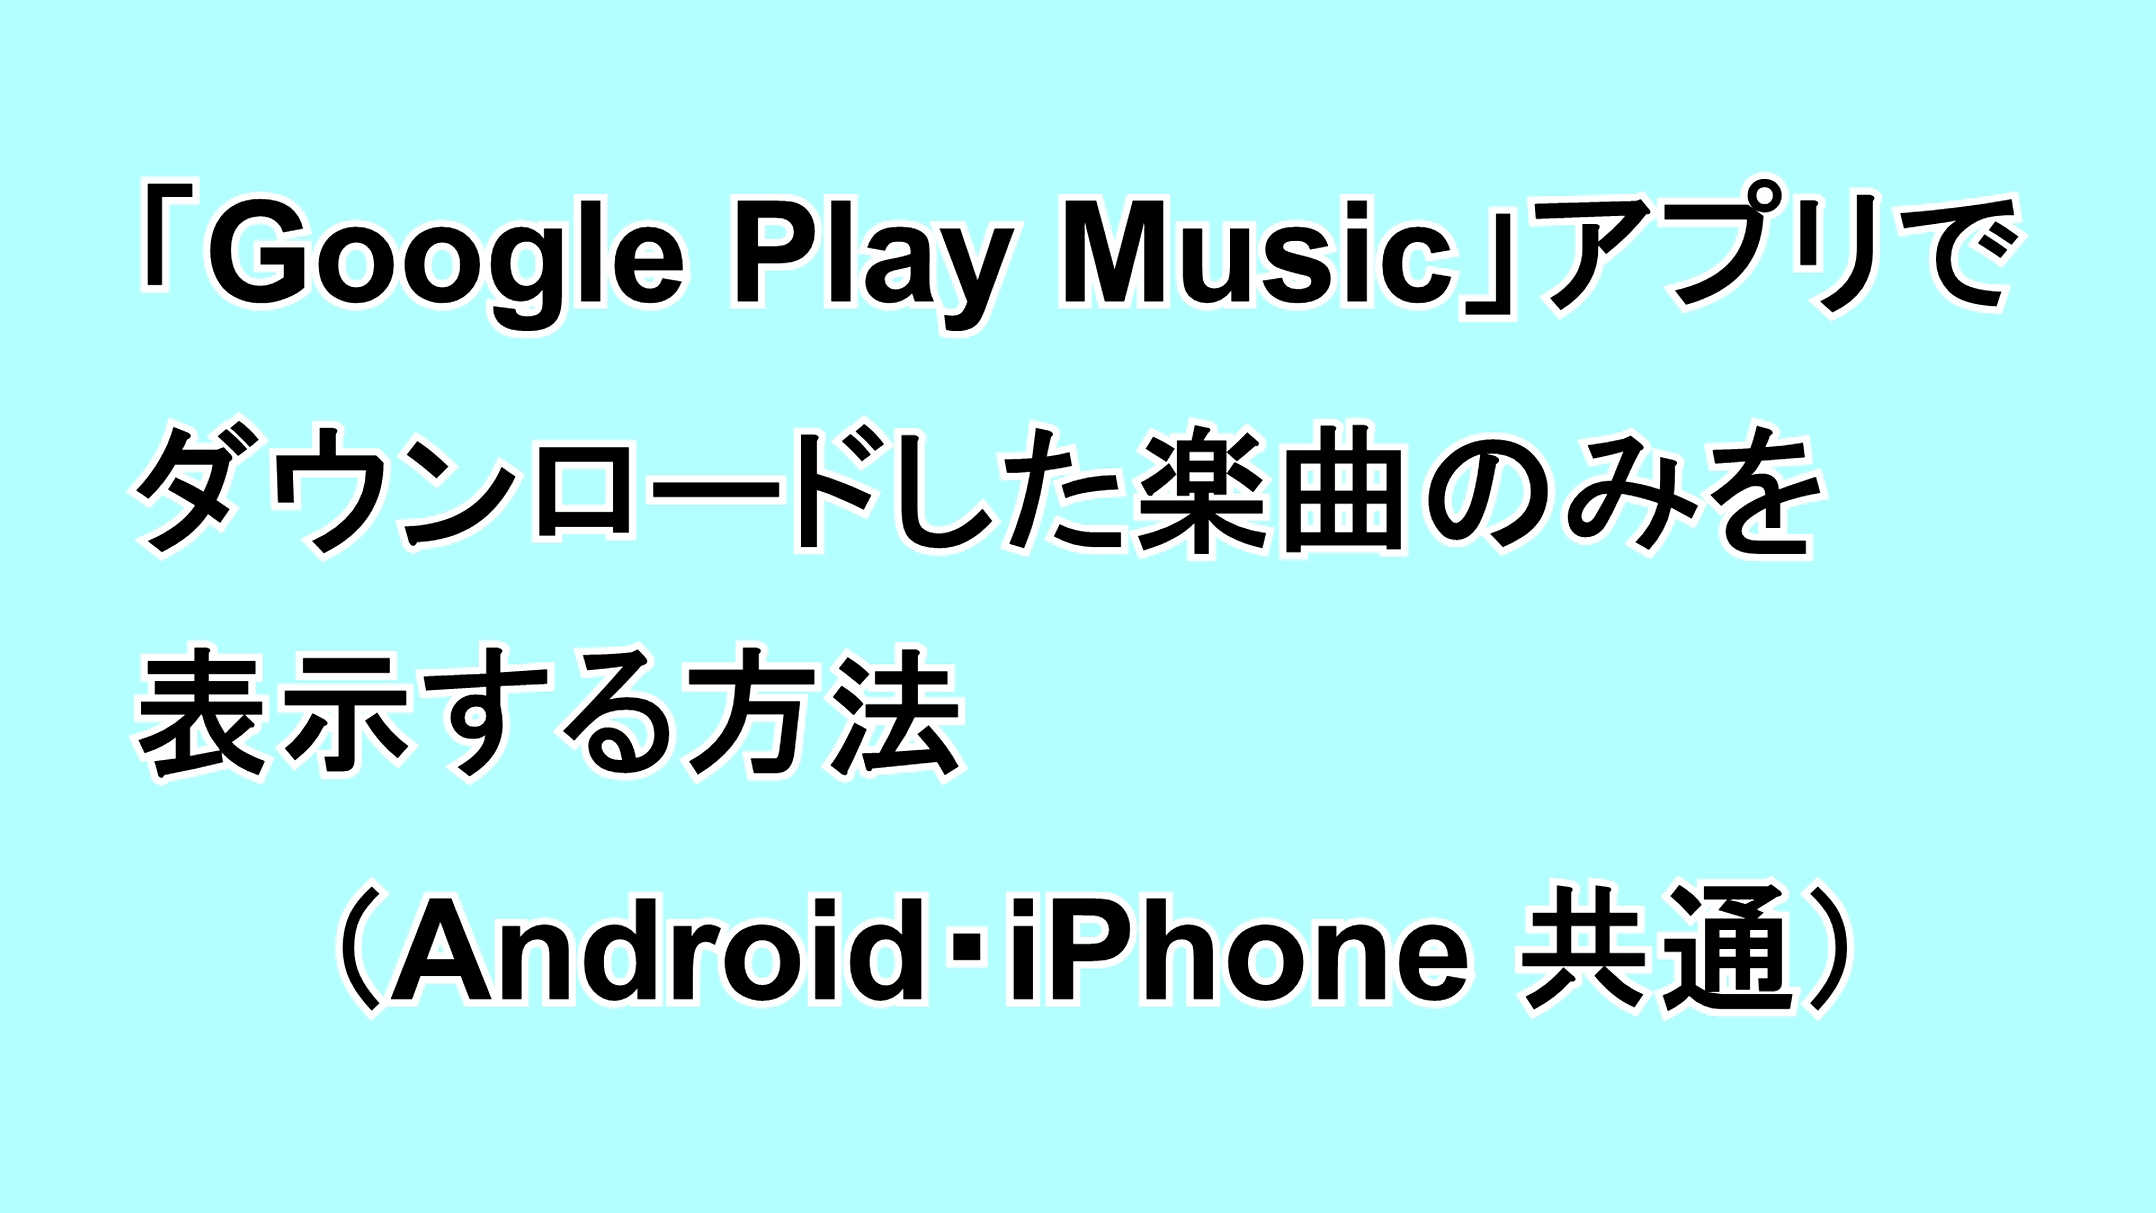 「Google Play Music」アプリでダウンロードした楽曲のみを表示する方法（Android・iPhone共通）